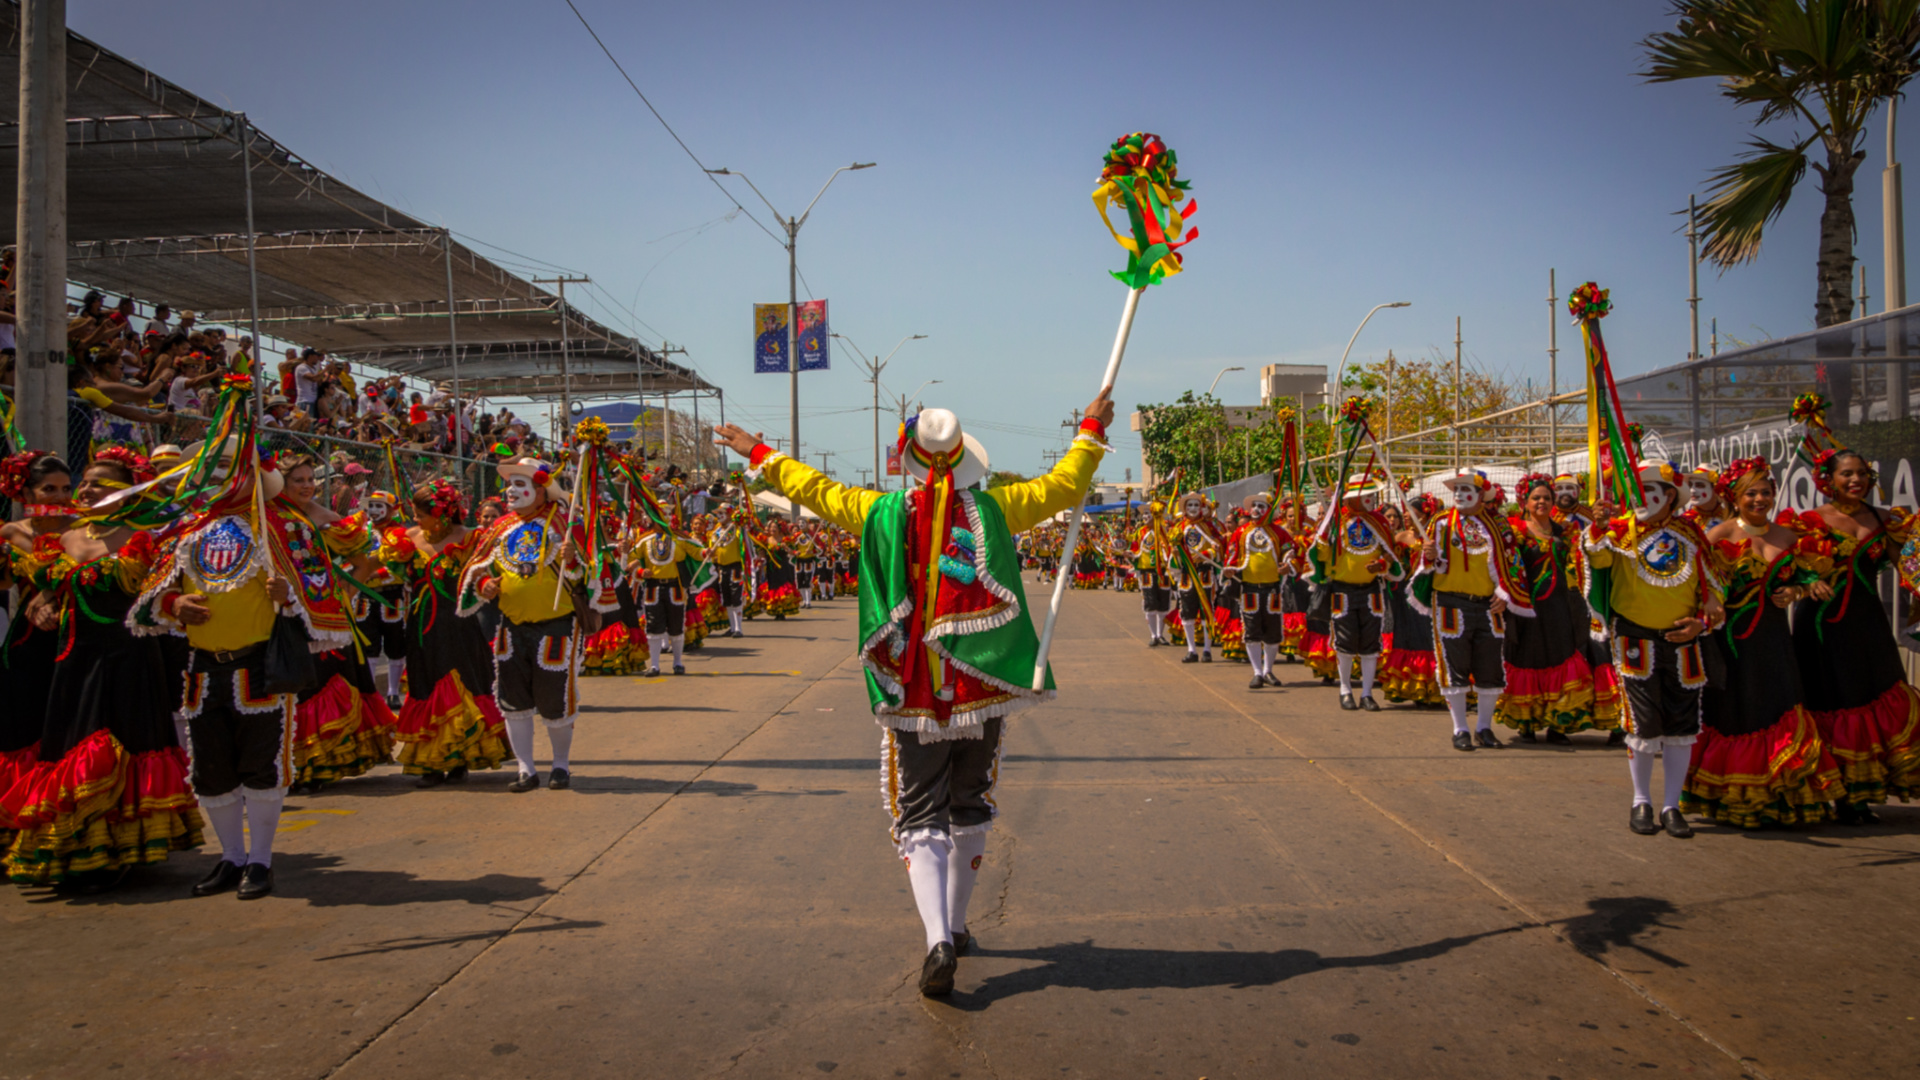 Carnaval de Barranquilla. La mayor fiesta del Caribe Colombiano tendrá que celebrarse desde casa a causa del coronavirus. Vía: Carnaval de Barranquilla